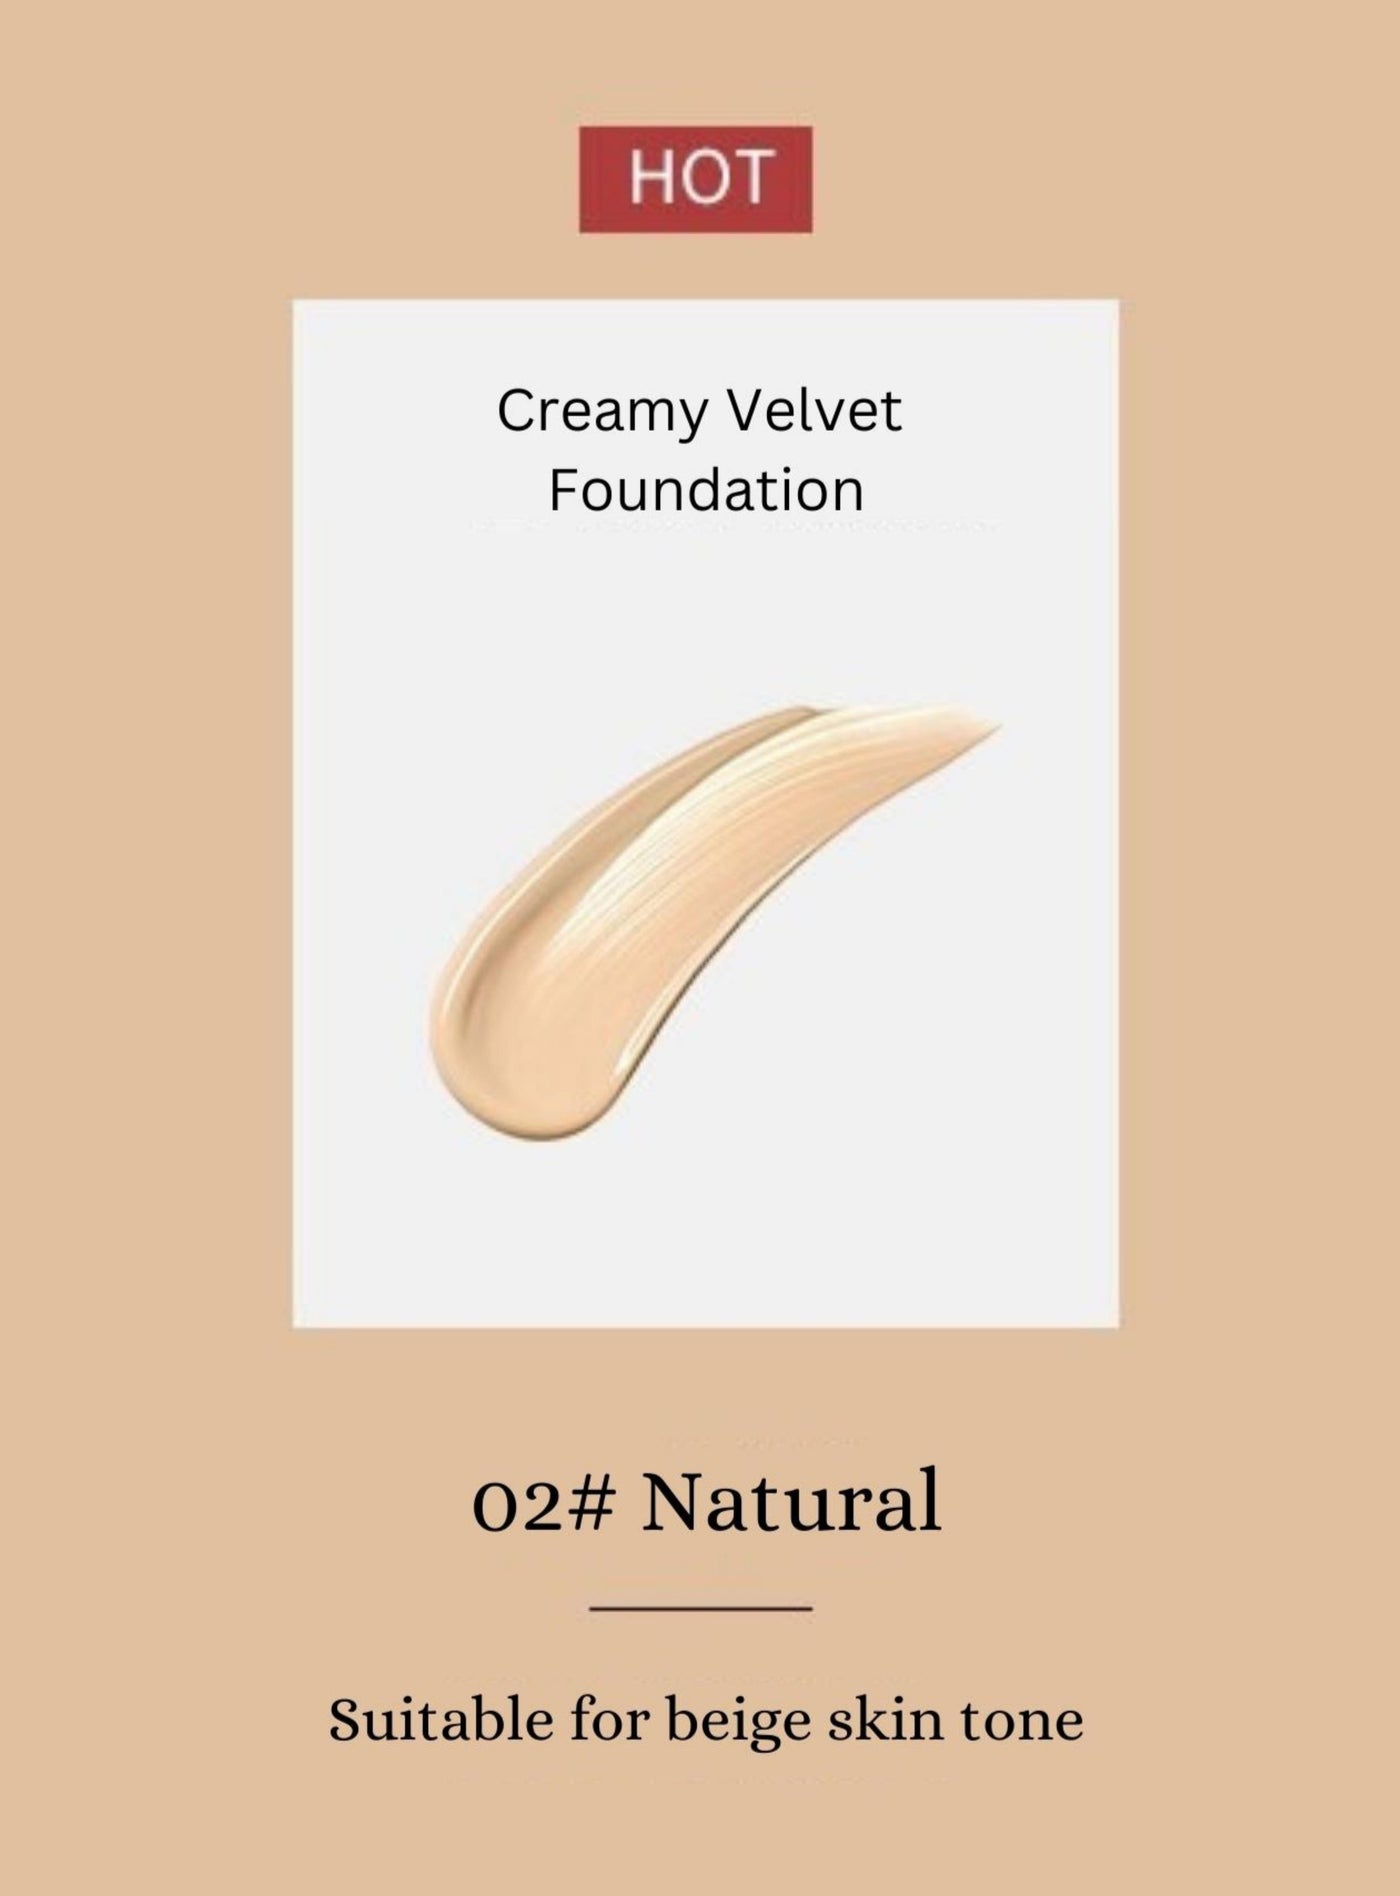 PASSIONAL LOVER Creamy Velvet Foundation